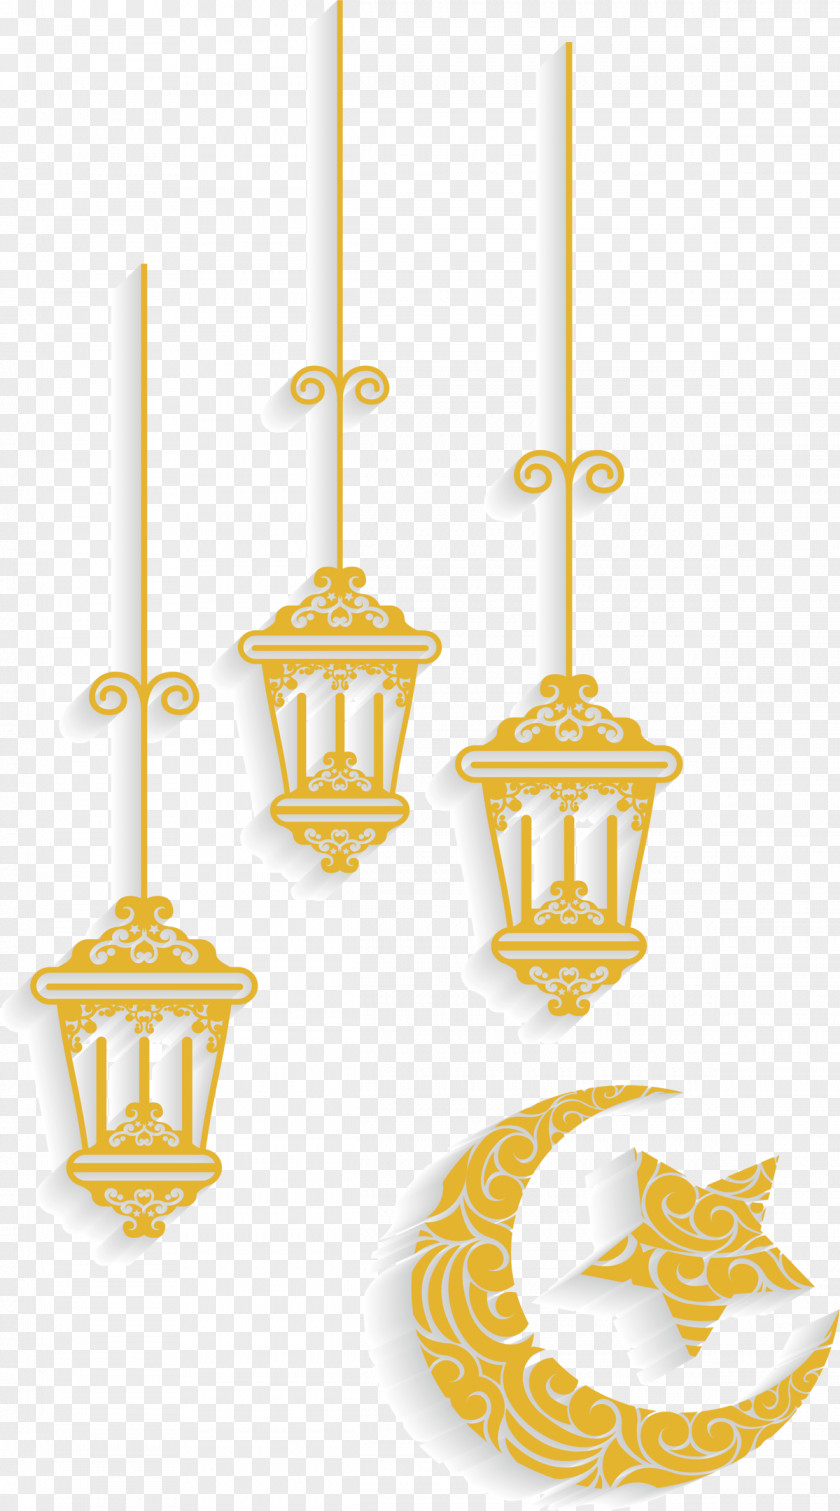 Islam Quran Islamic Ornament Art Vector Graphics PNG